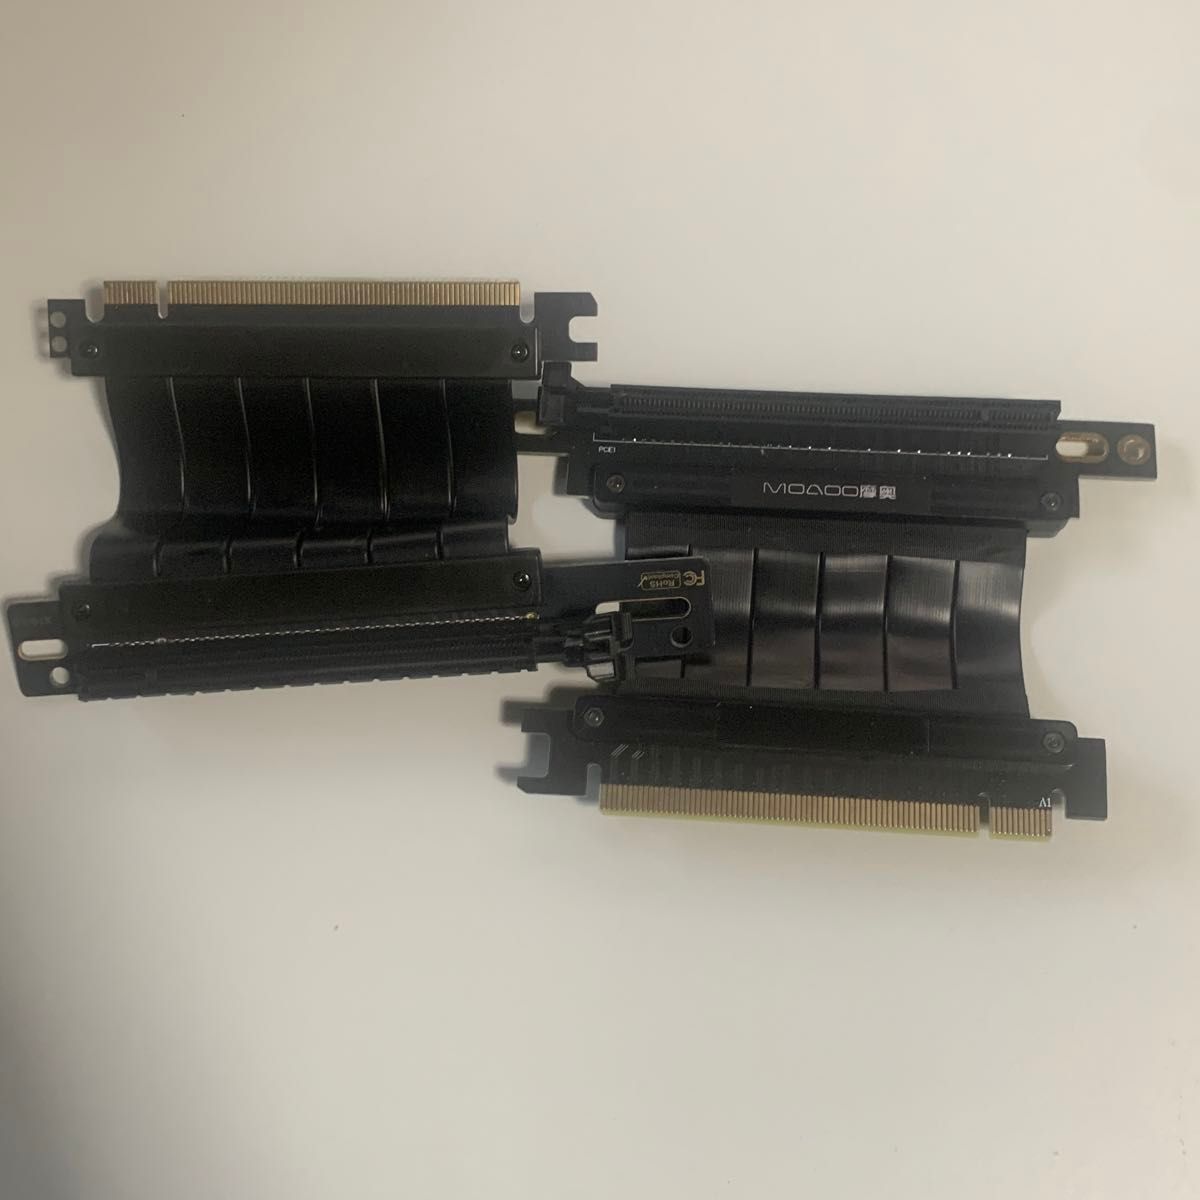 ノーブランド PCIE16X フレキシブルライザーカード 5cm 2本 90度